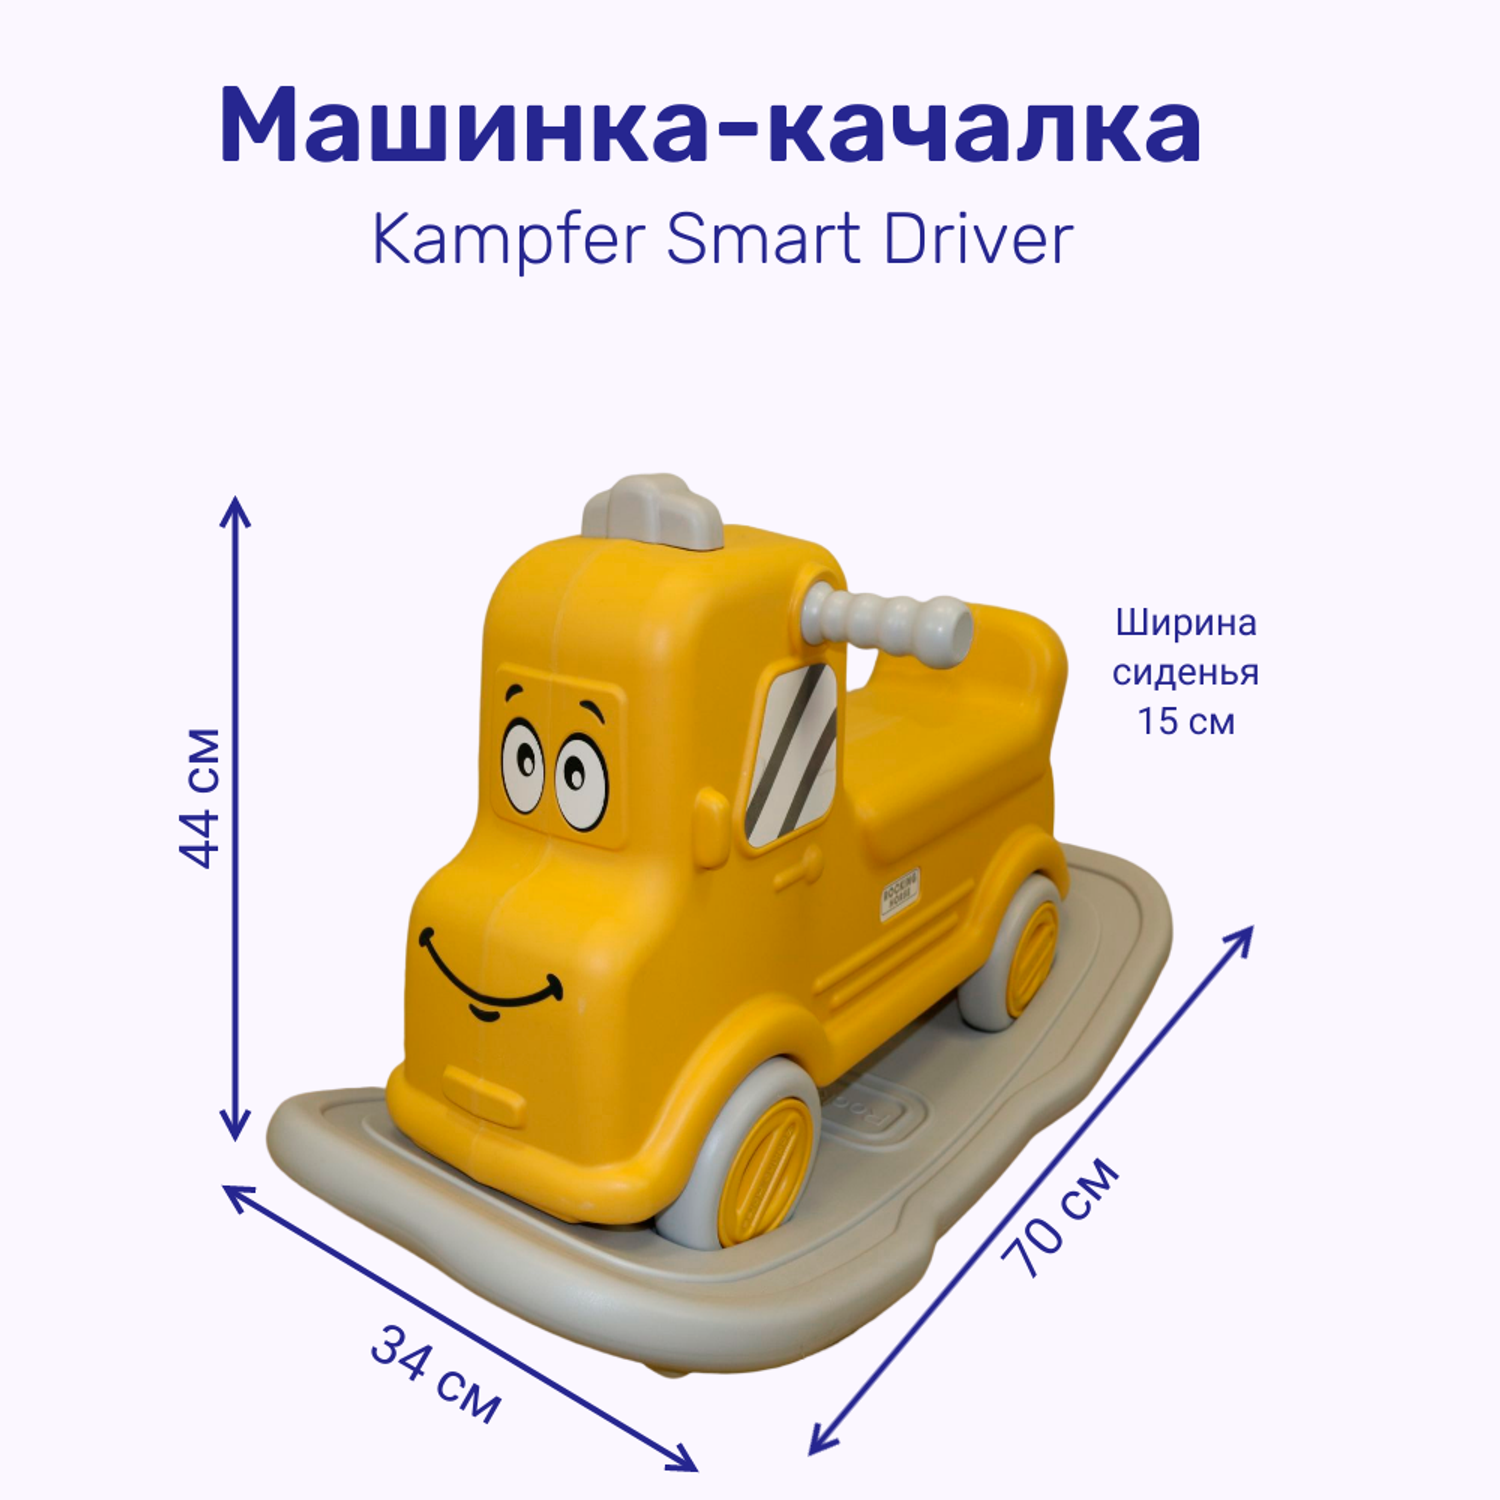 Качалка-трансформер Kampfer детская Smart Driver - фото 2